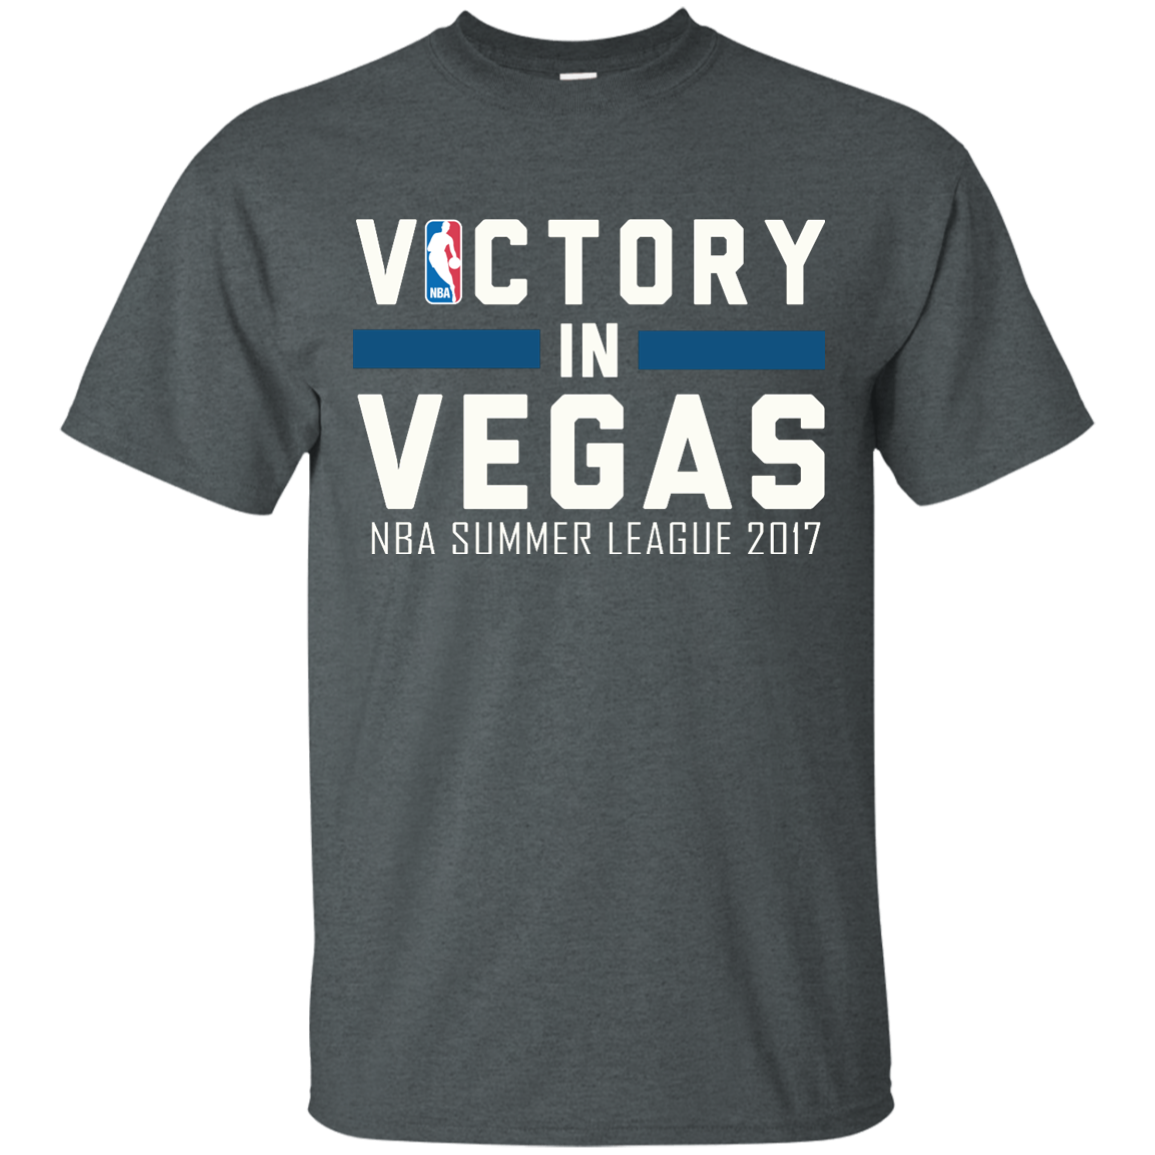 Victory in Vegas shirt, hoodie, long sleeve